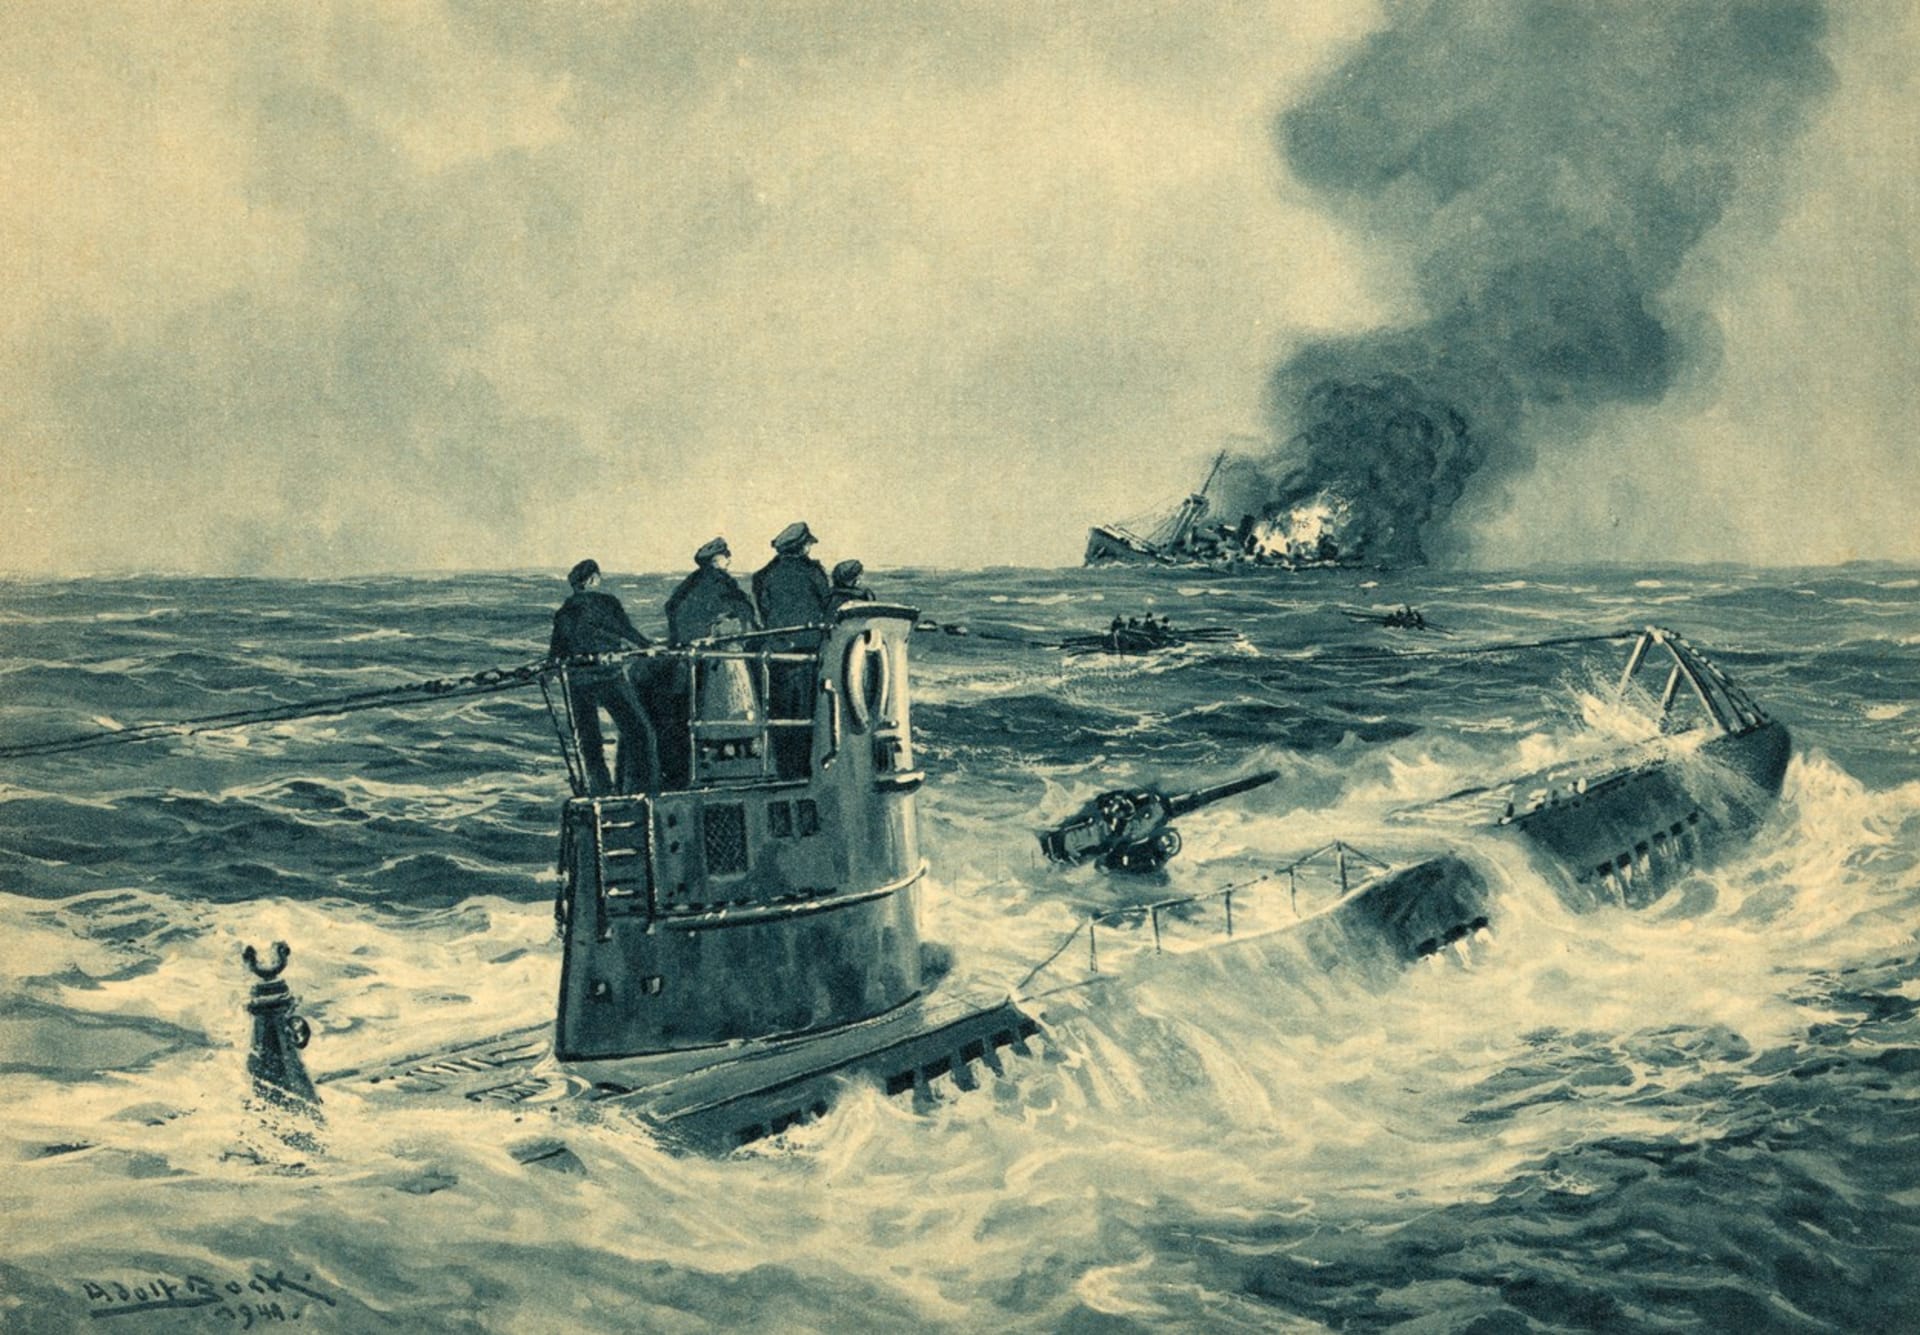 Během druhé světové války potopily německé ponorky 2825 spojeneckých obchodních lodí